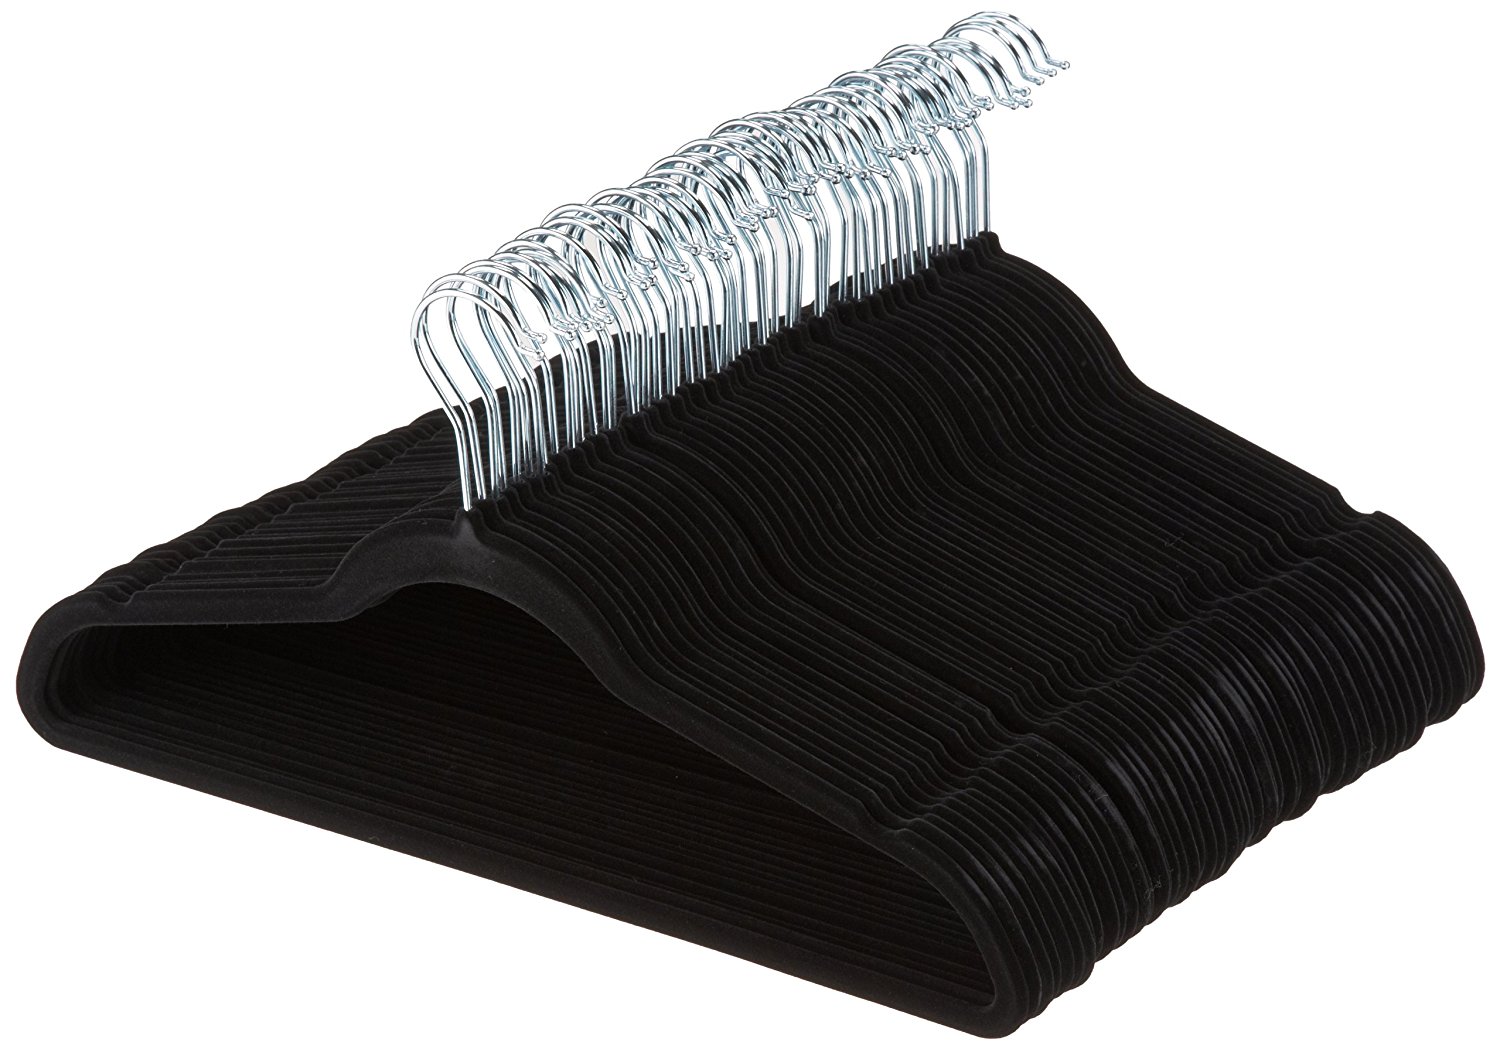 AmazonBasics Velvet Suit Hangers 50 Pack Only $10.50!